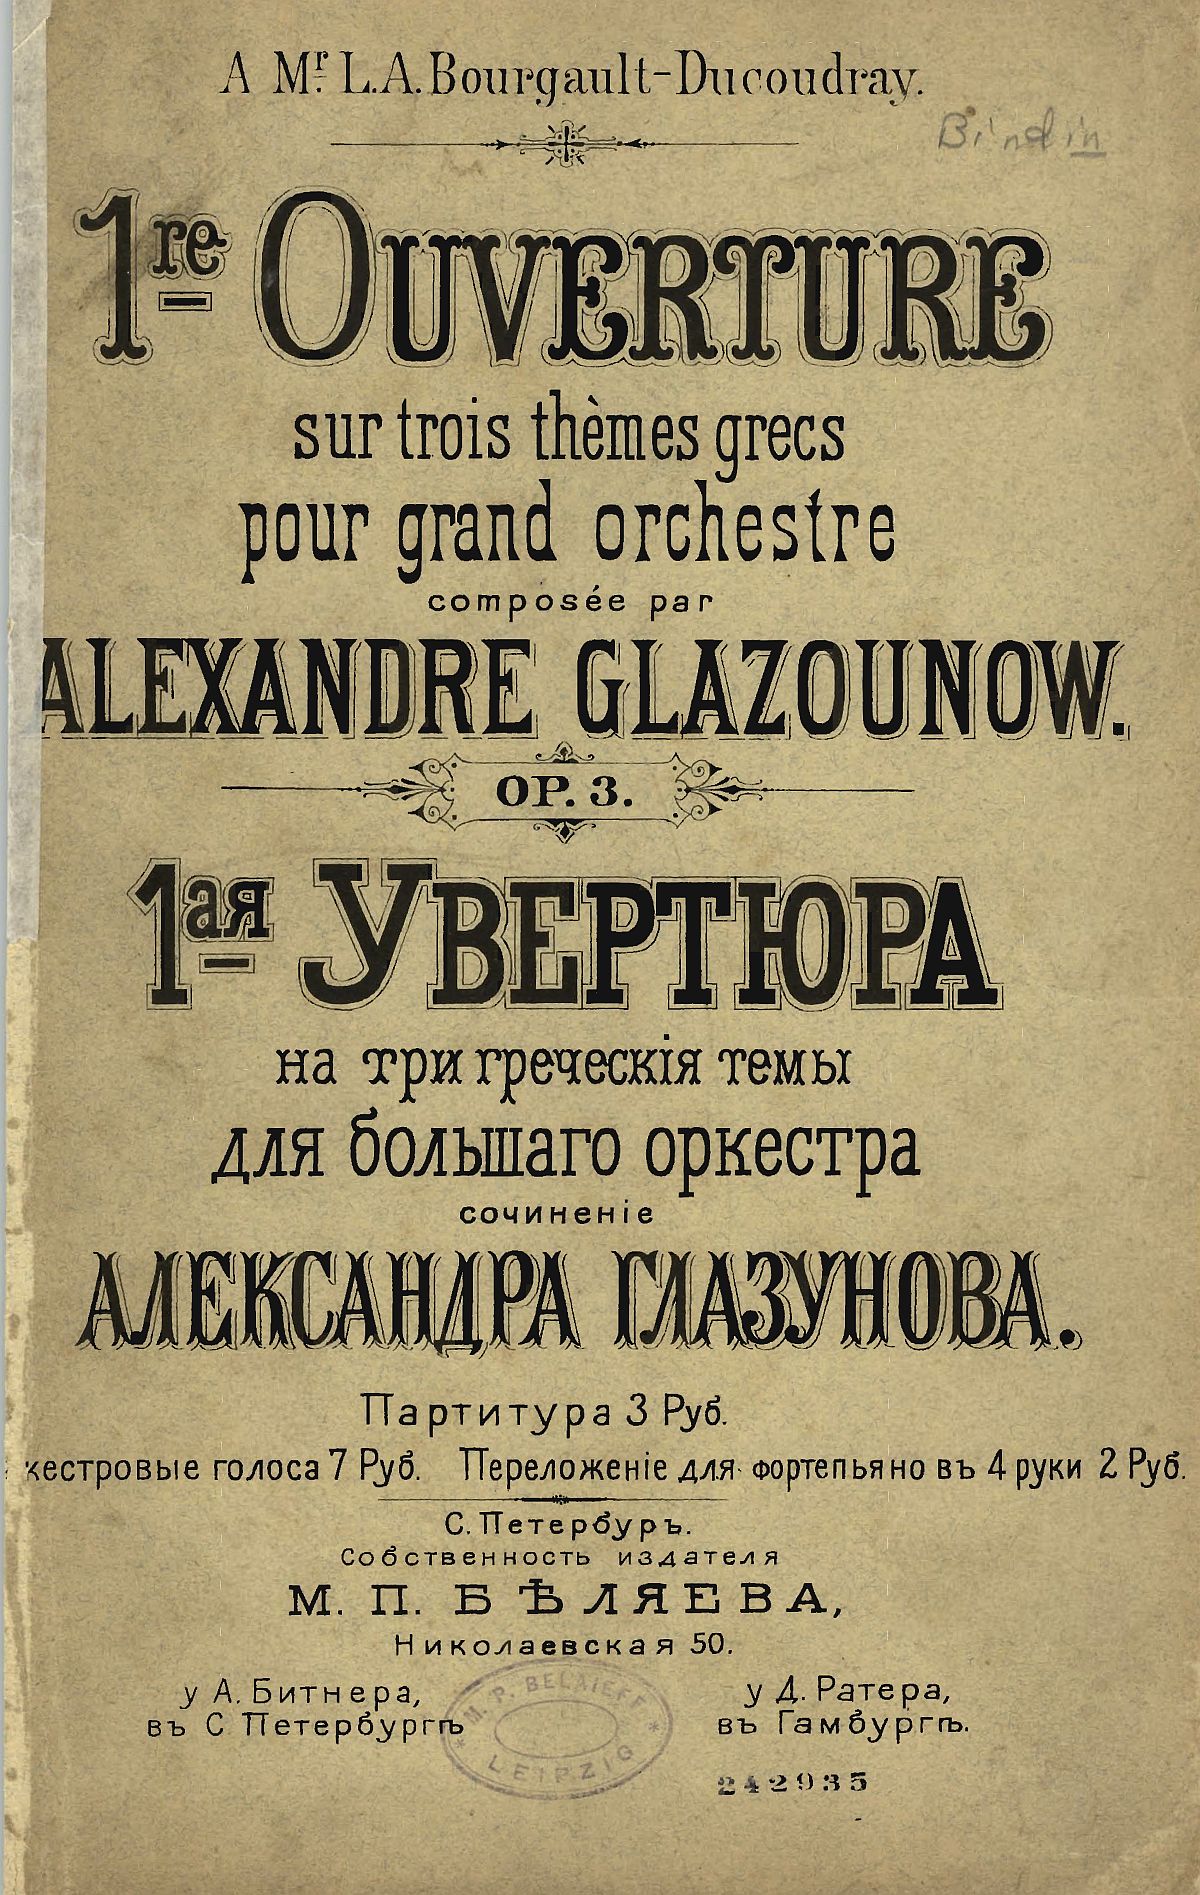 Page de couverture de la partition, Édition St. Petersburg: M.P. Belaieff, n.d.(1886). Plate 1, Sibley Mirroring Project, IMSLP, cliquer pour voir l'original